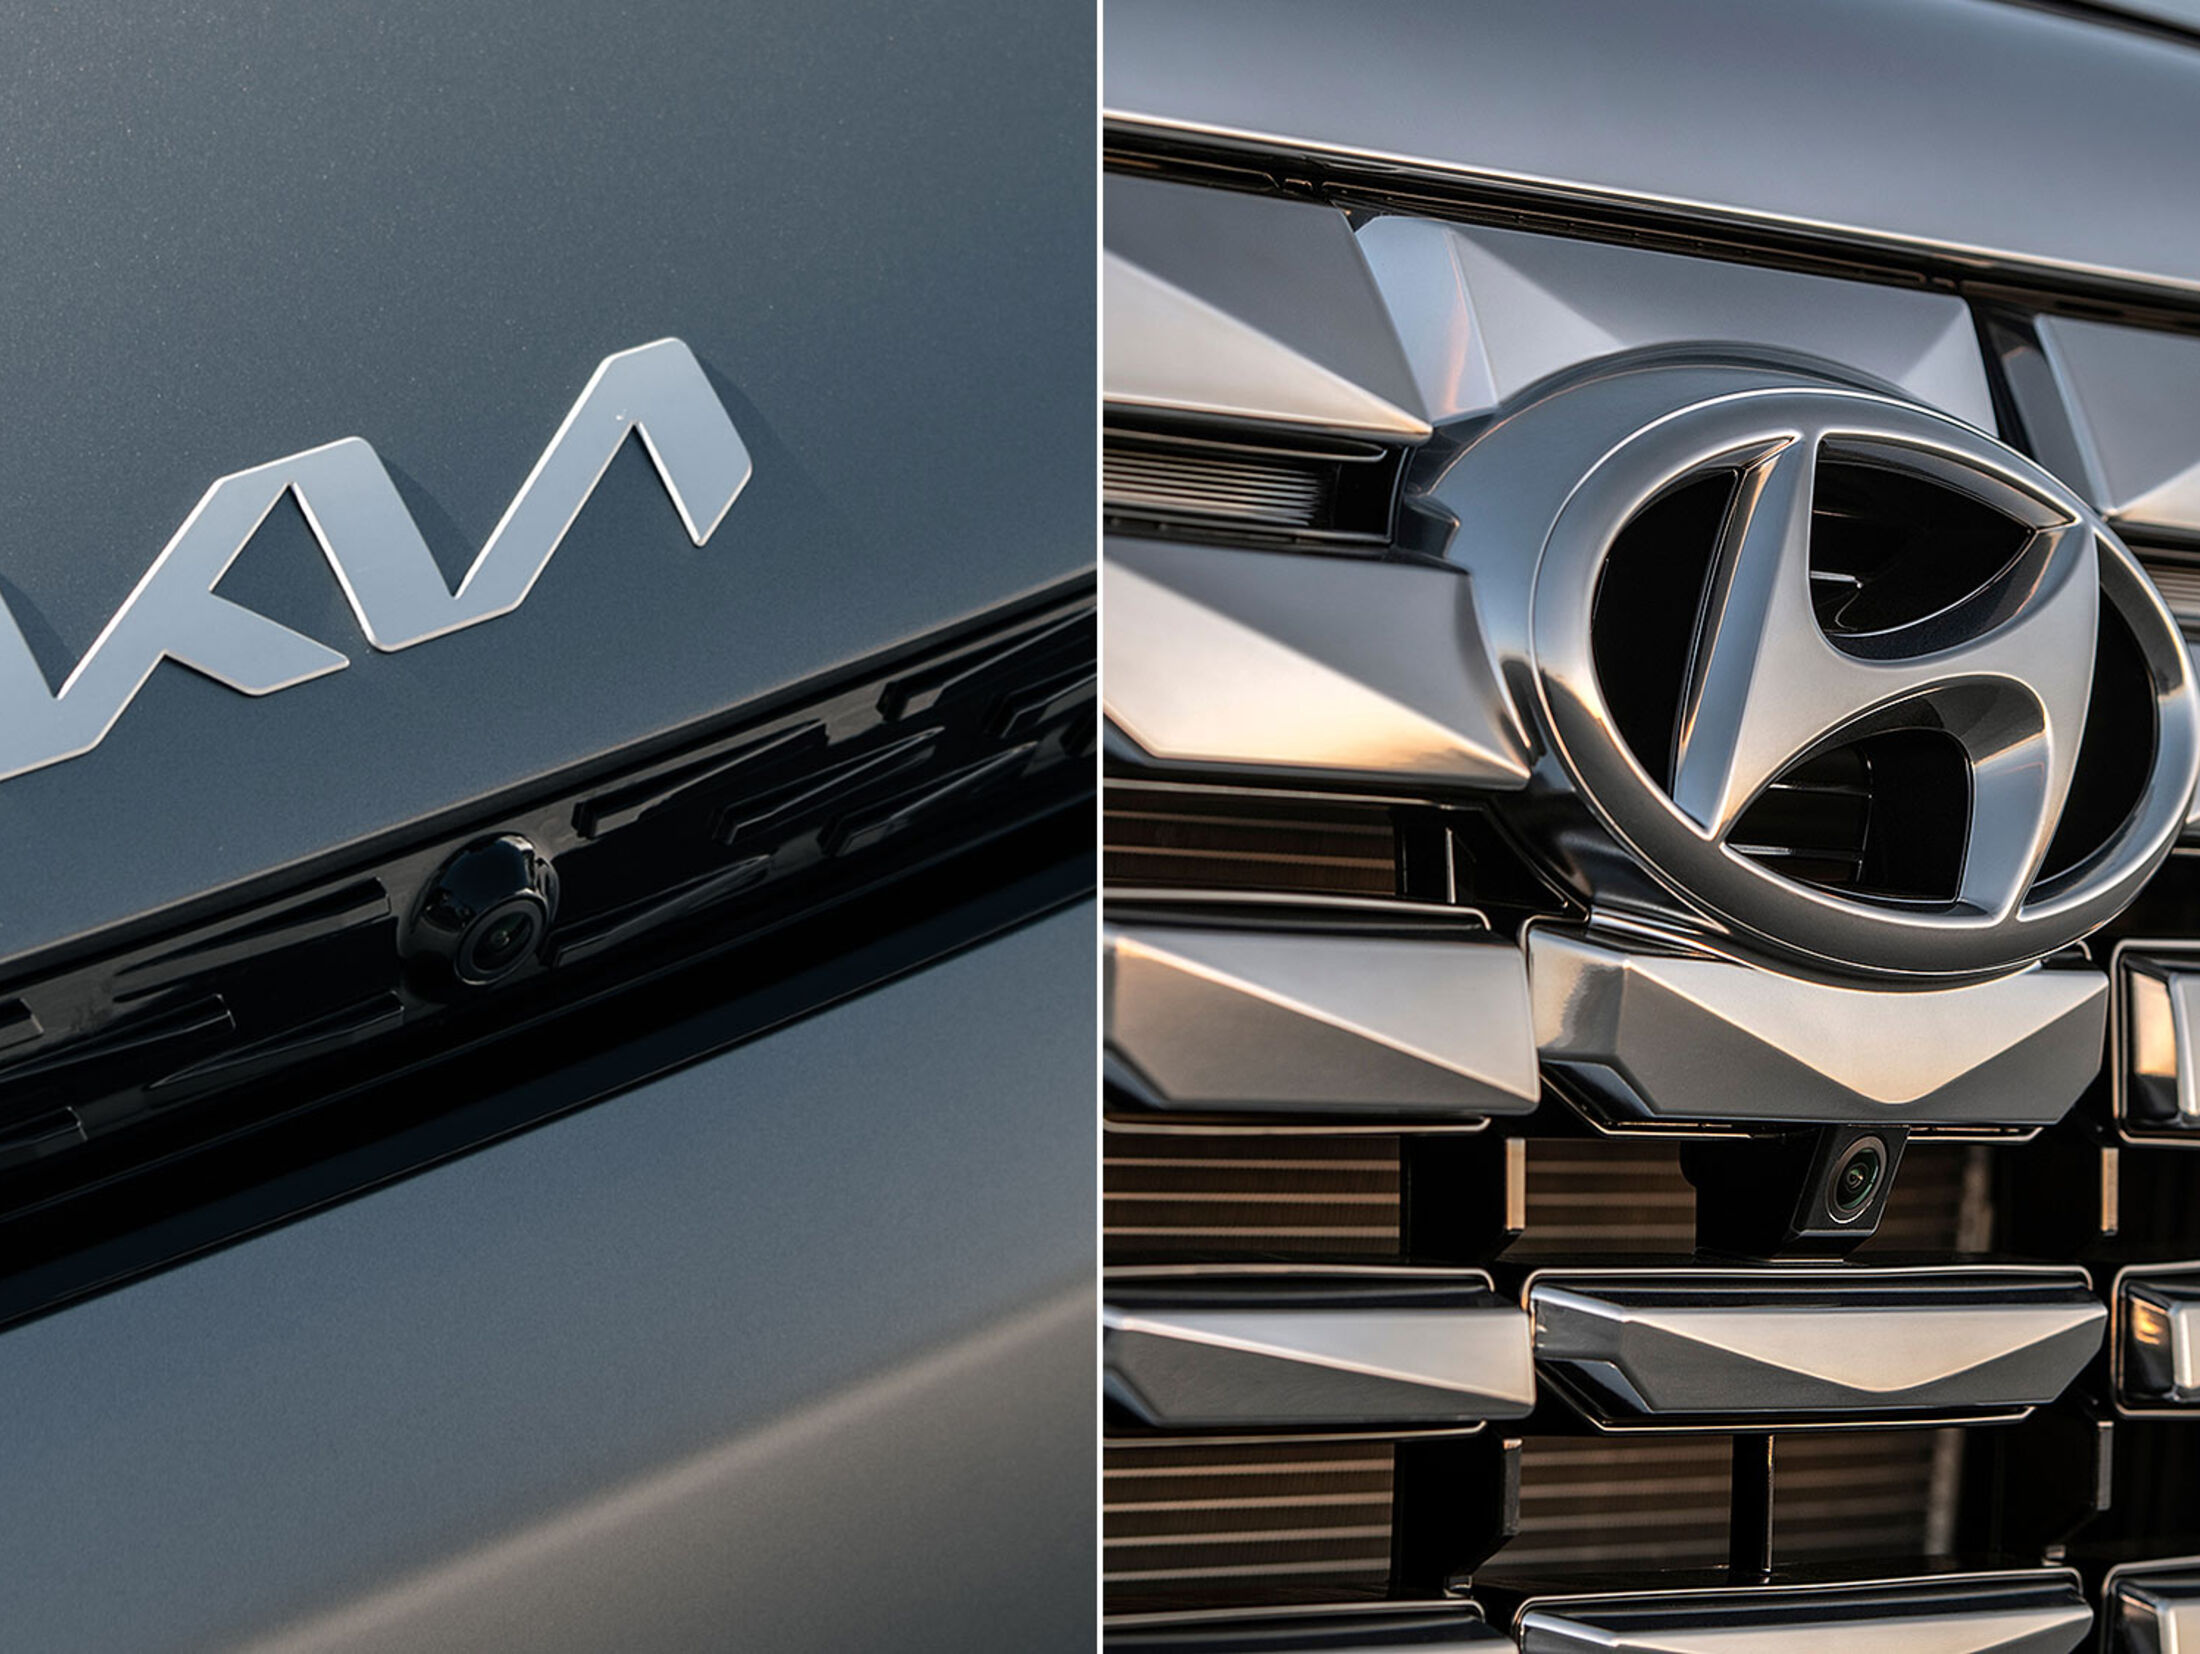 Diebstahl-Problem Hyundai/Kia: Autoklau als Tik Tok-Challenge